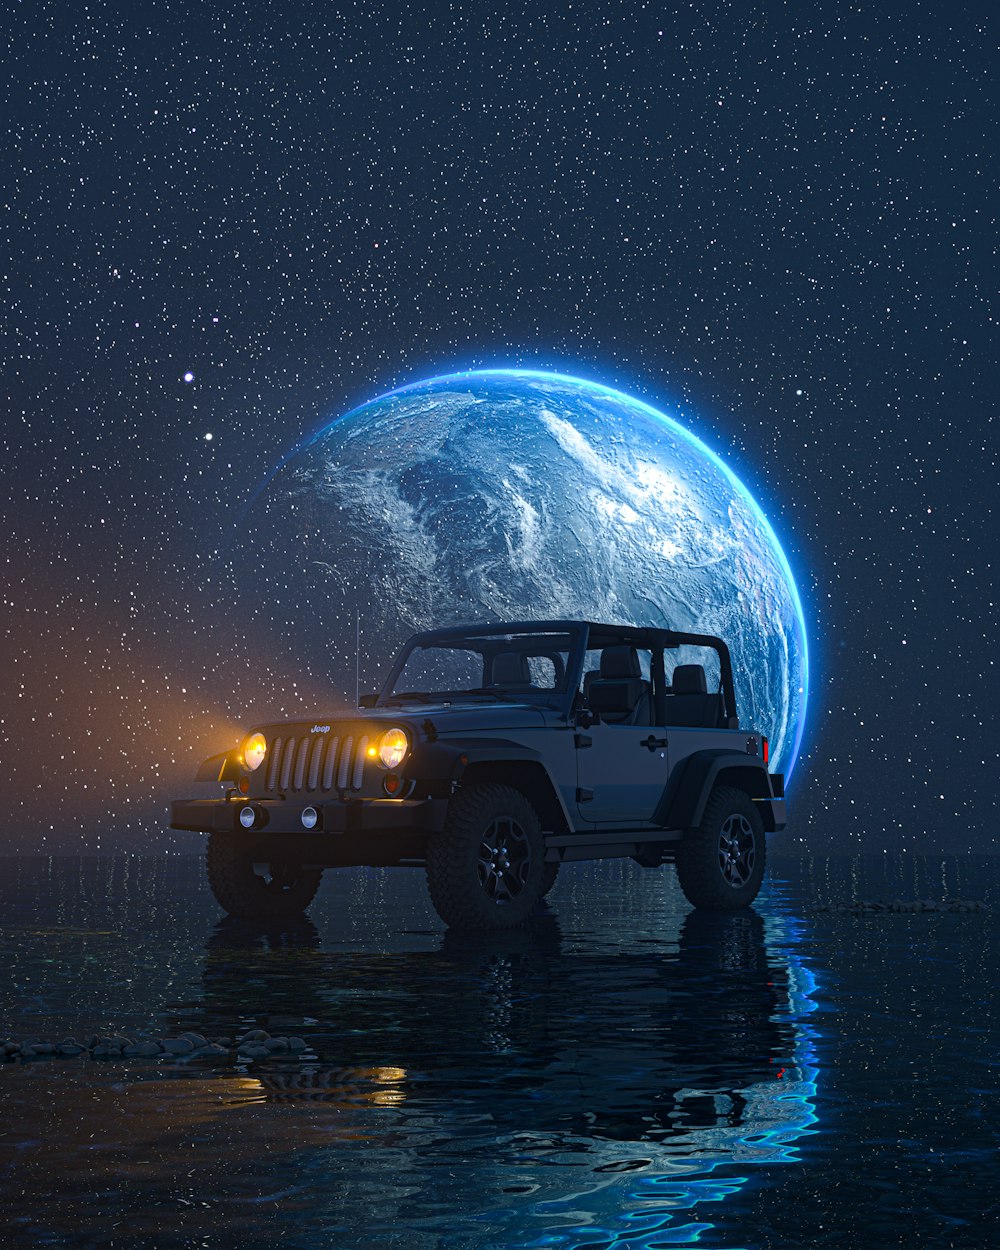 Une jeep est garée devant la terre